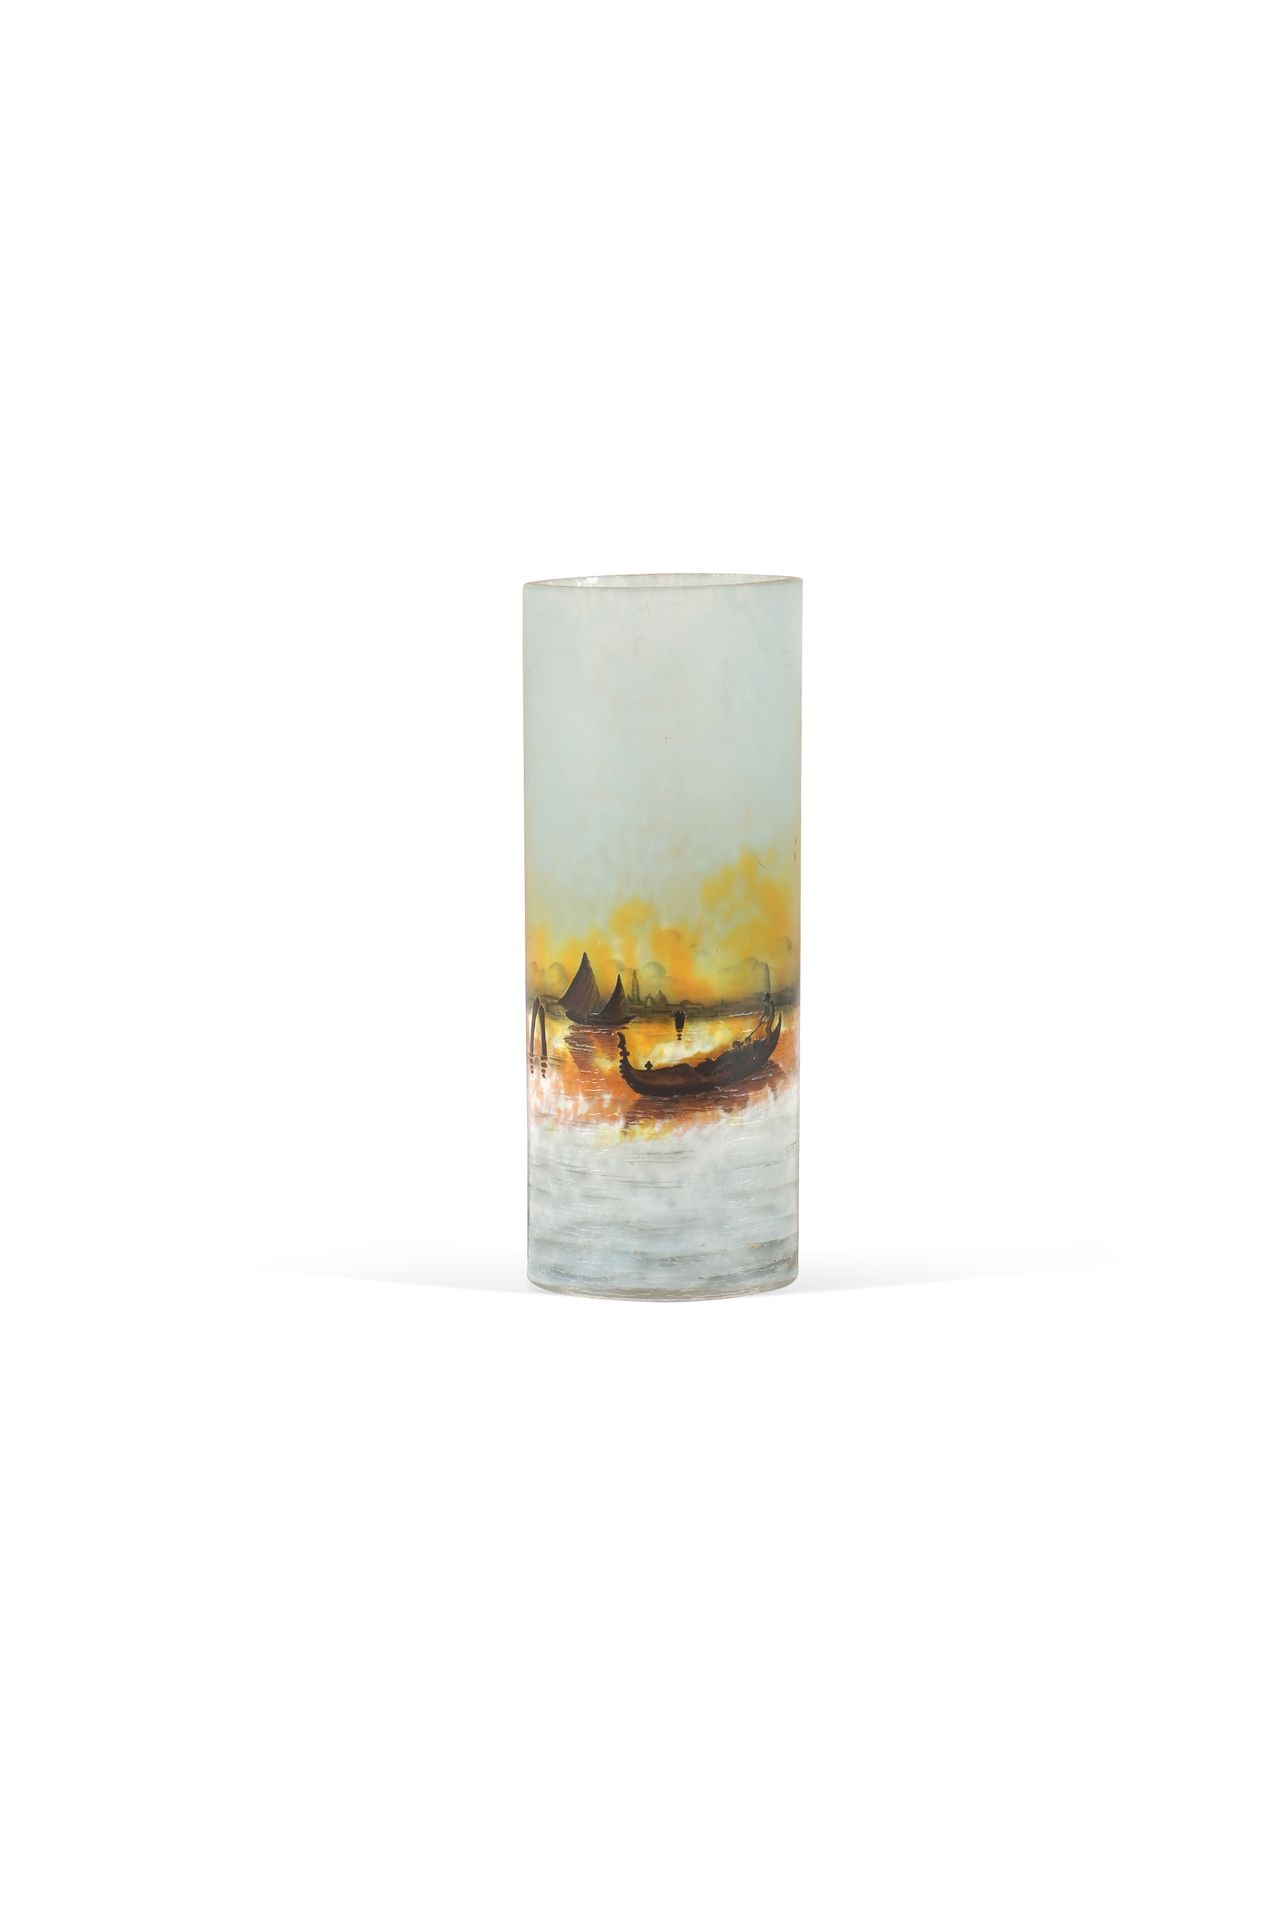 Null DAUM NANCY 名为威尼斯泻湖的花瓶 底座下有酸性蚀刻玻璃签名 高22厘米